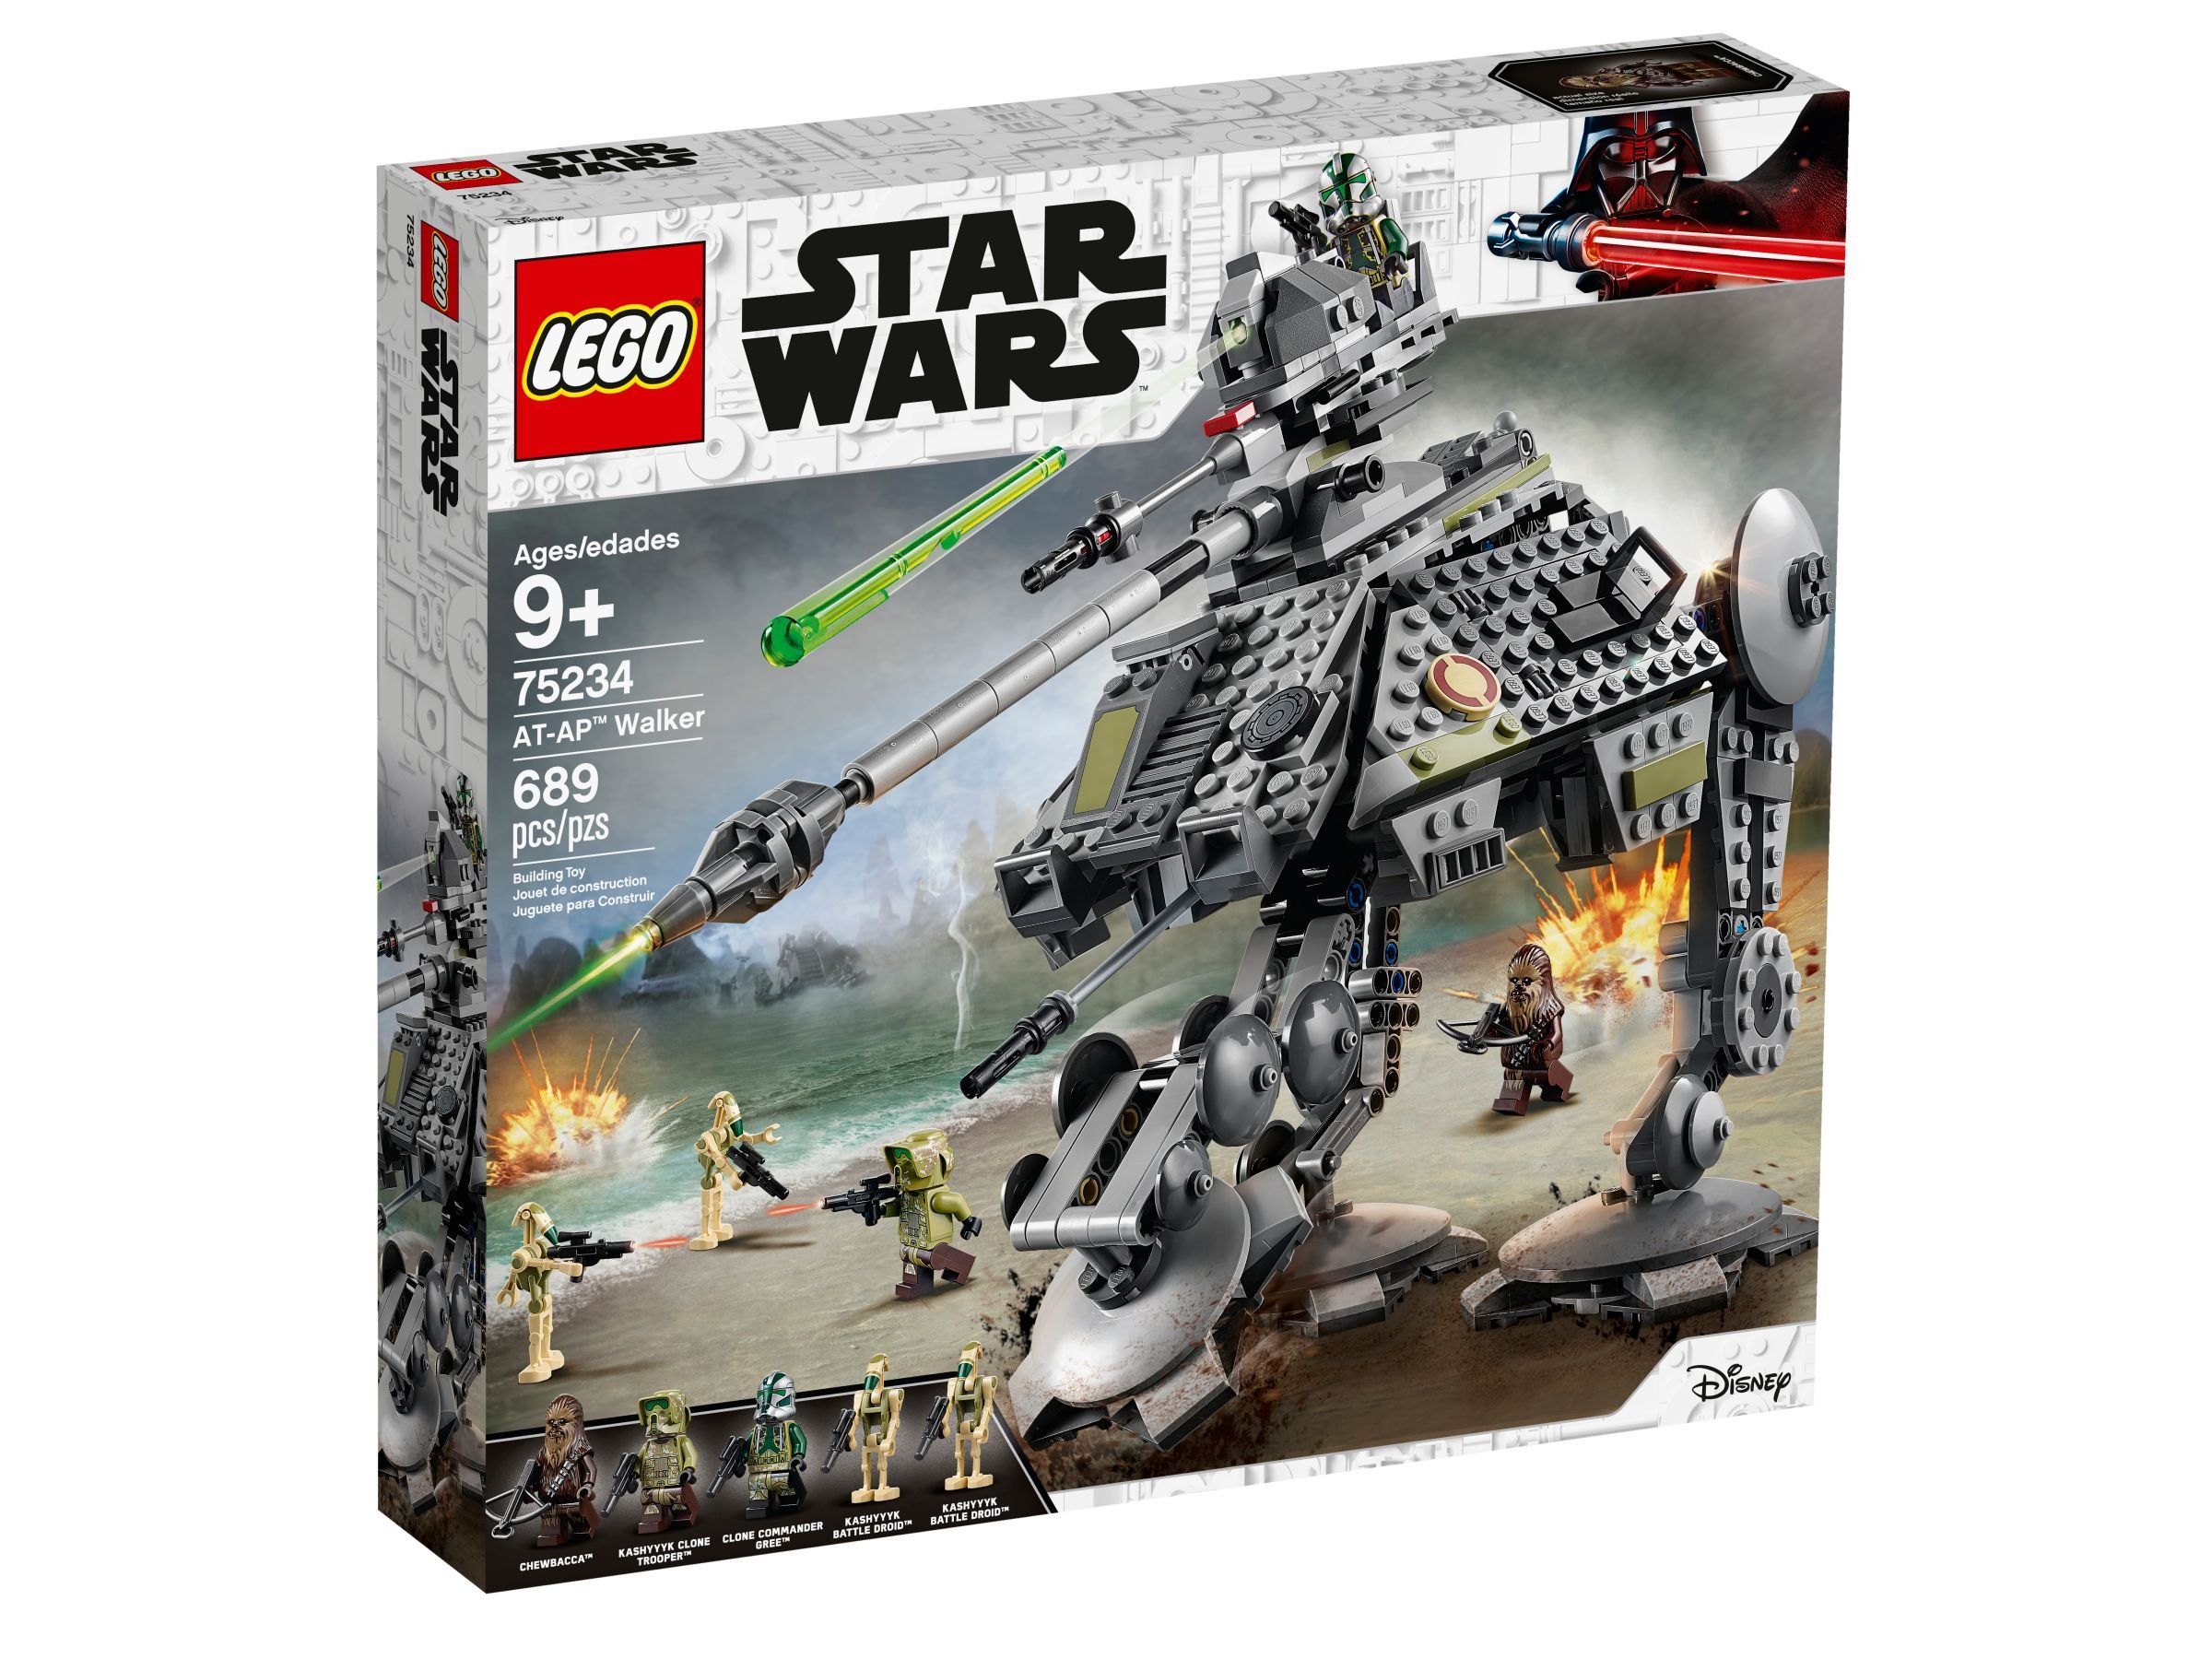 LEGO Star Wars 75234 AT-AP Walker LEGO_75234_alt1.jpg